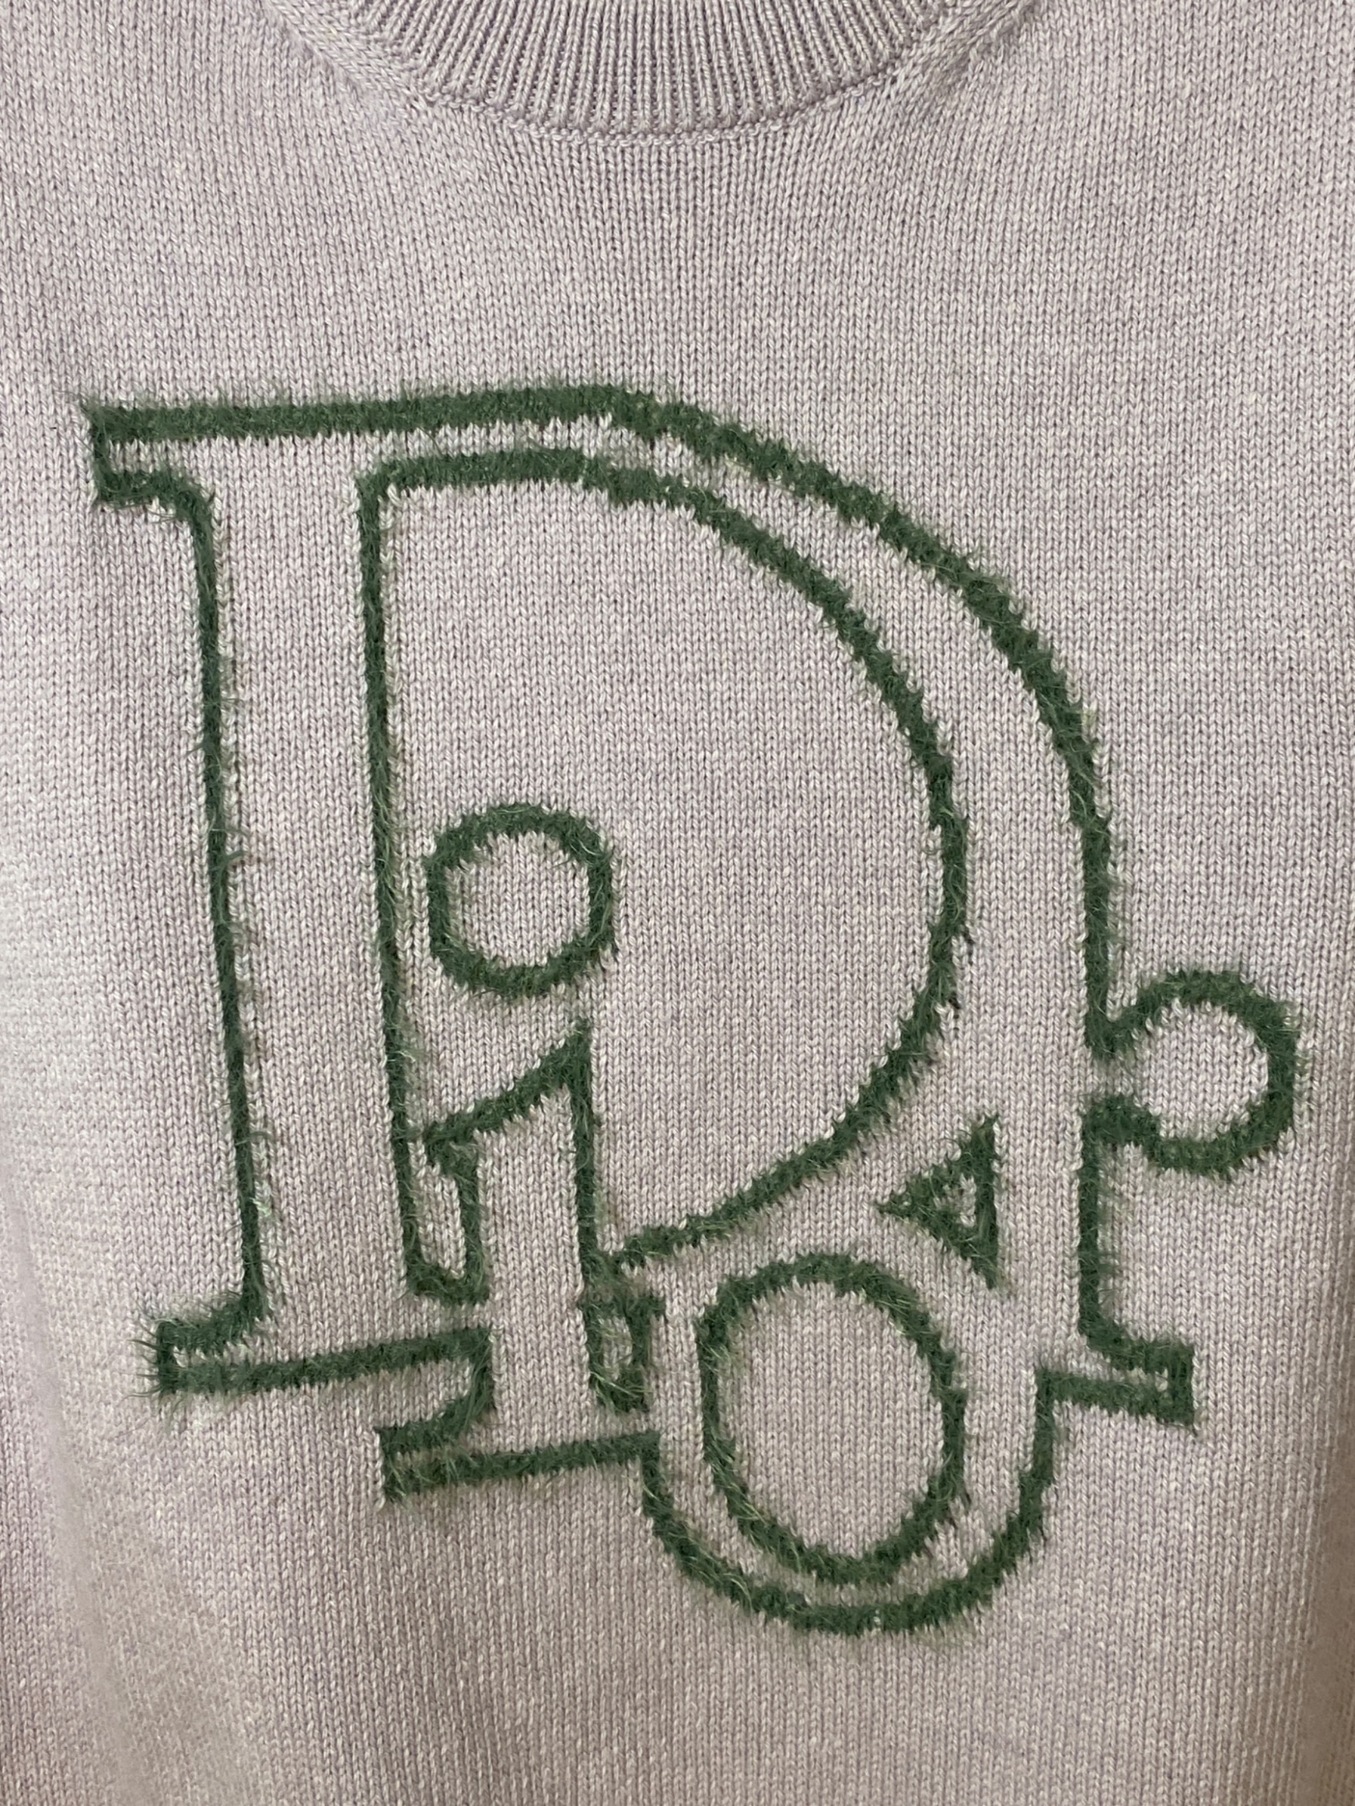 中古・古着通販】Christian Dior (クリスチャン ディオール) ロゴ